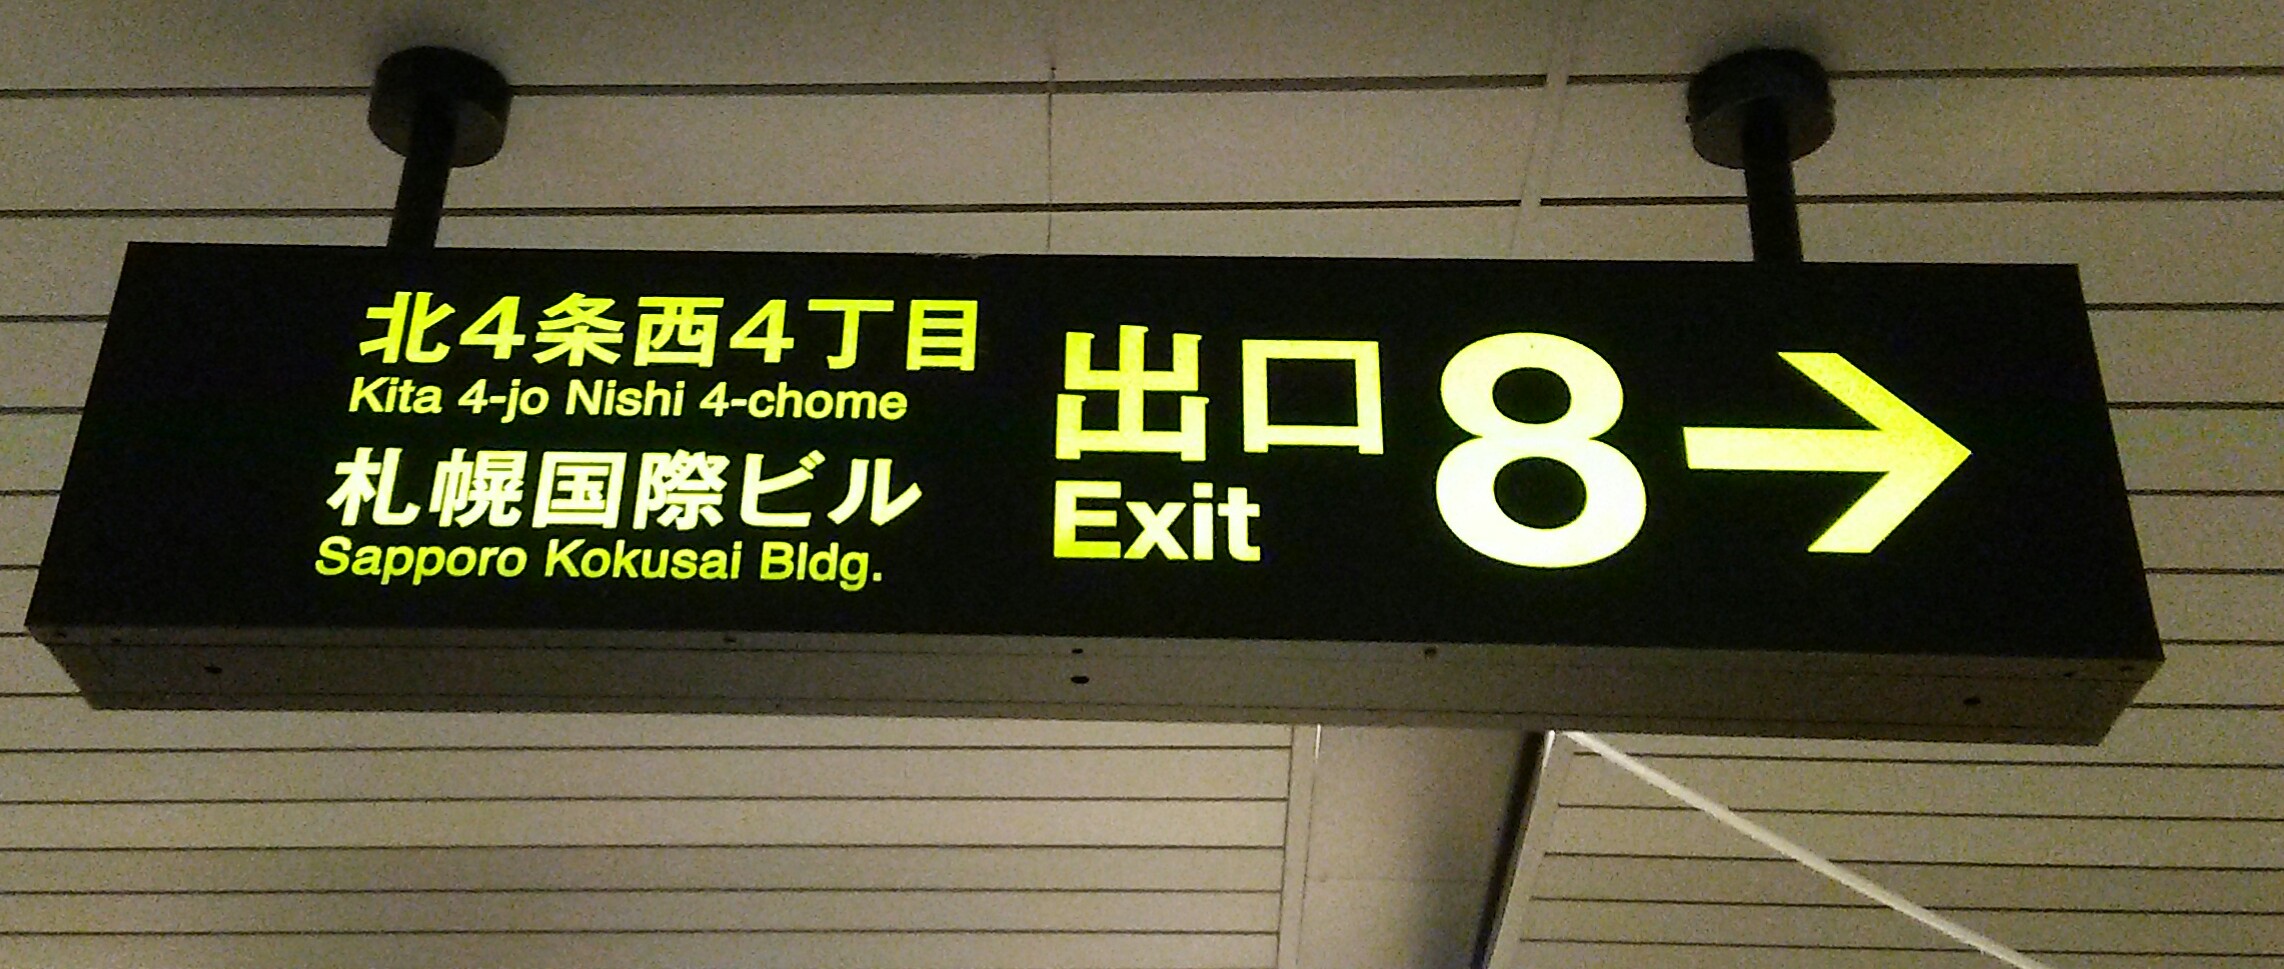 地下鉄さっぽろ駅８番出口の案内板